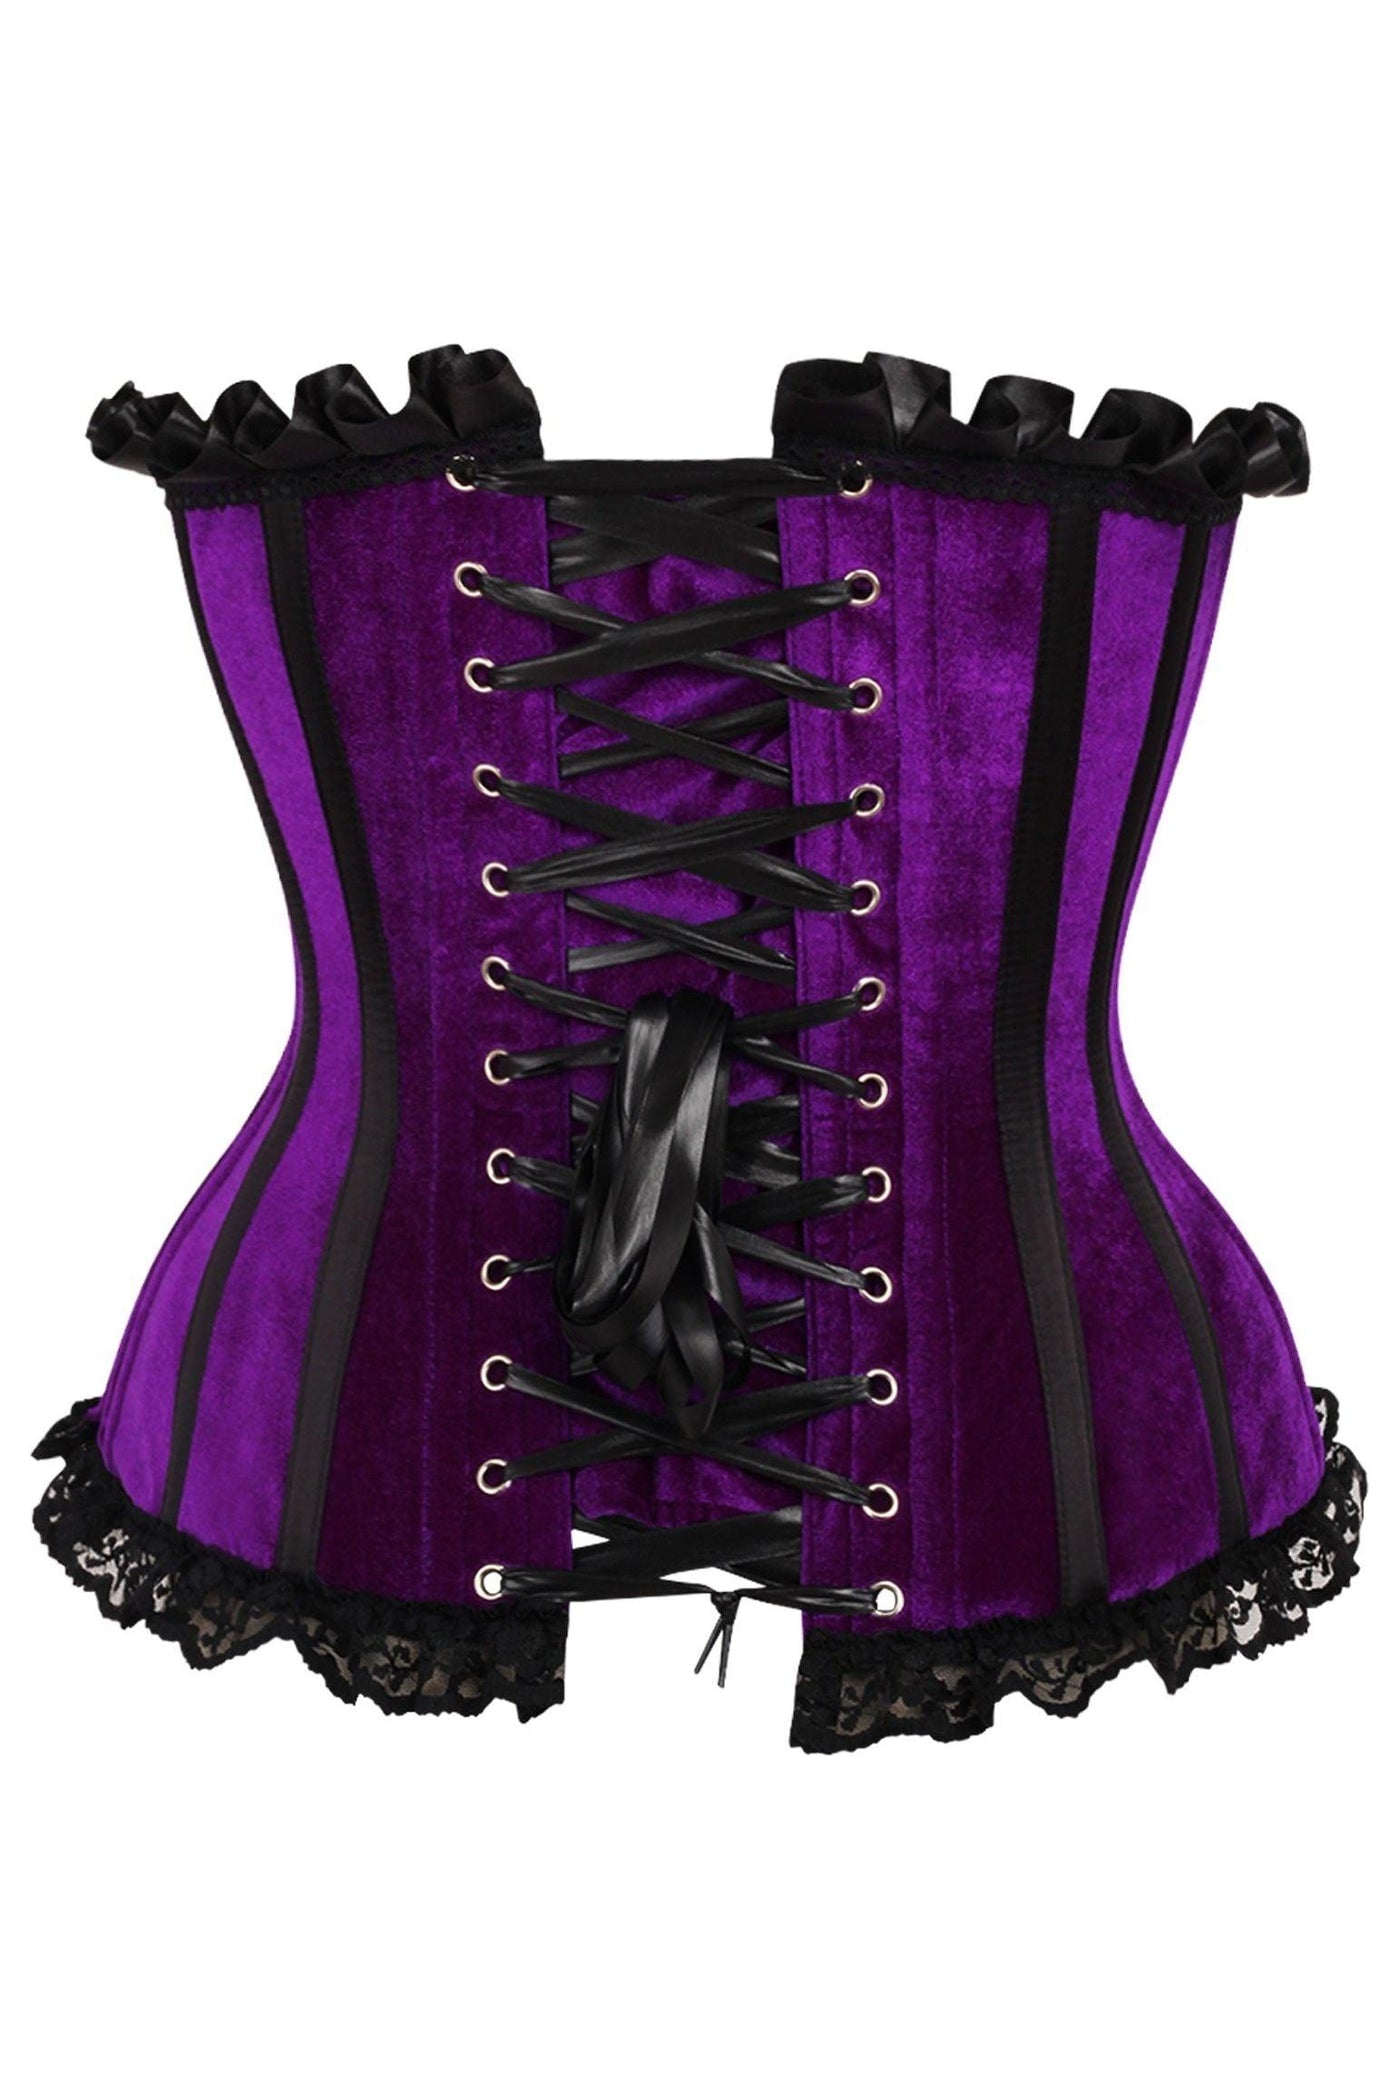 Top Drawer Purple Velvet Steel Boned Burlesque Corset - AMIClubwear